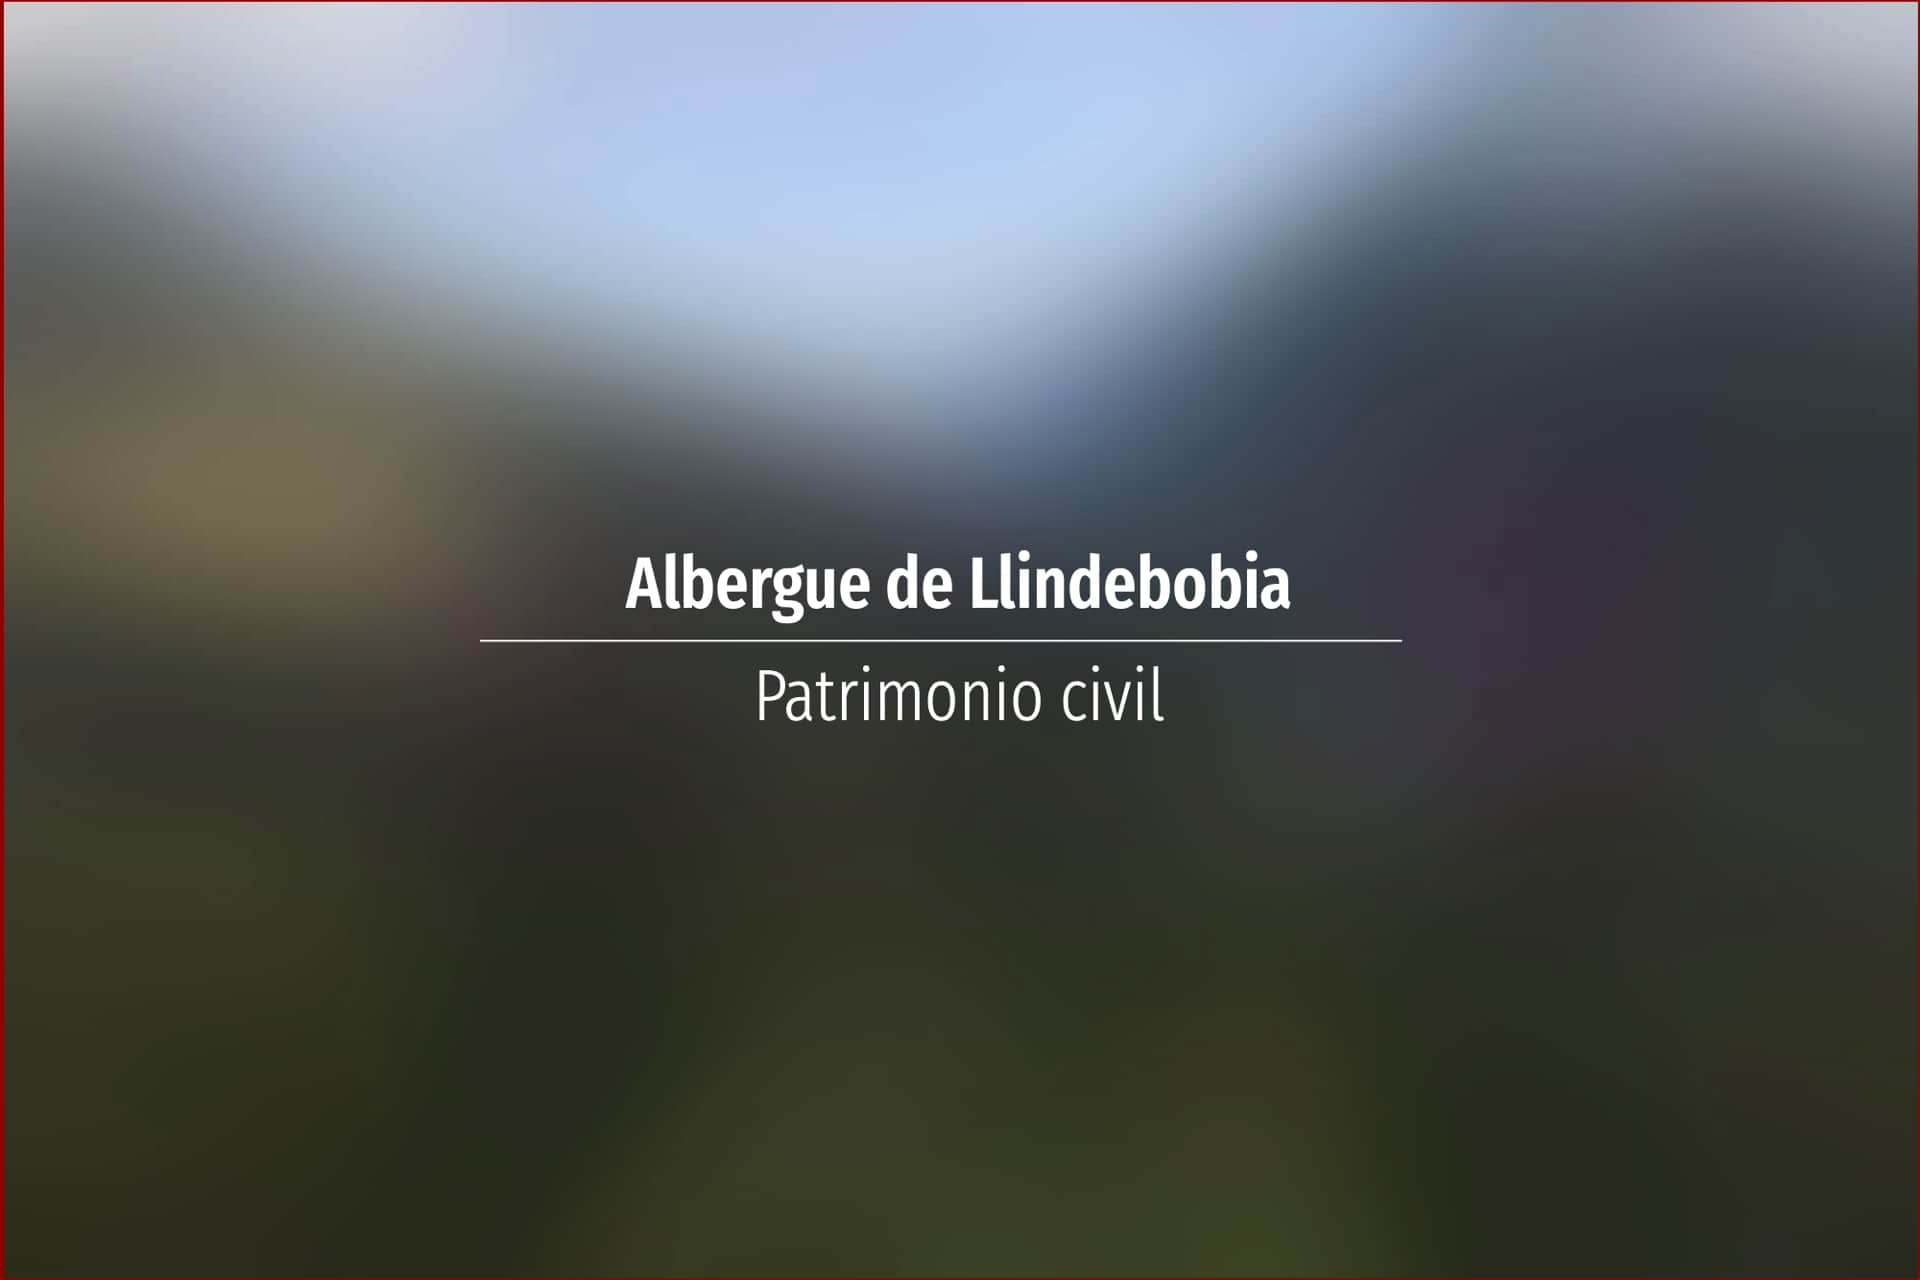 Albergue de Llindebobia